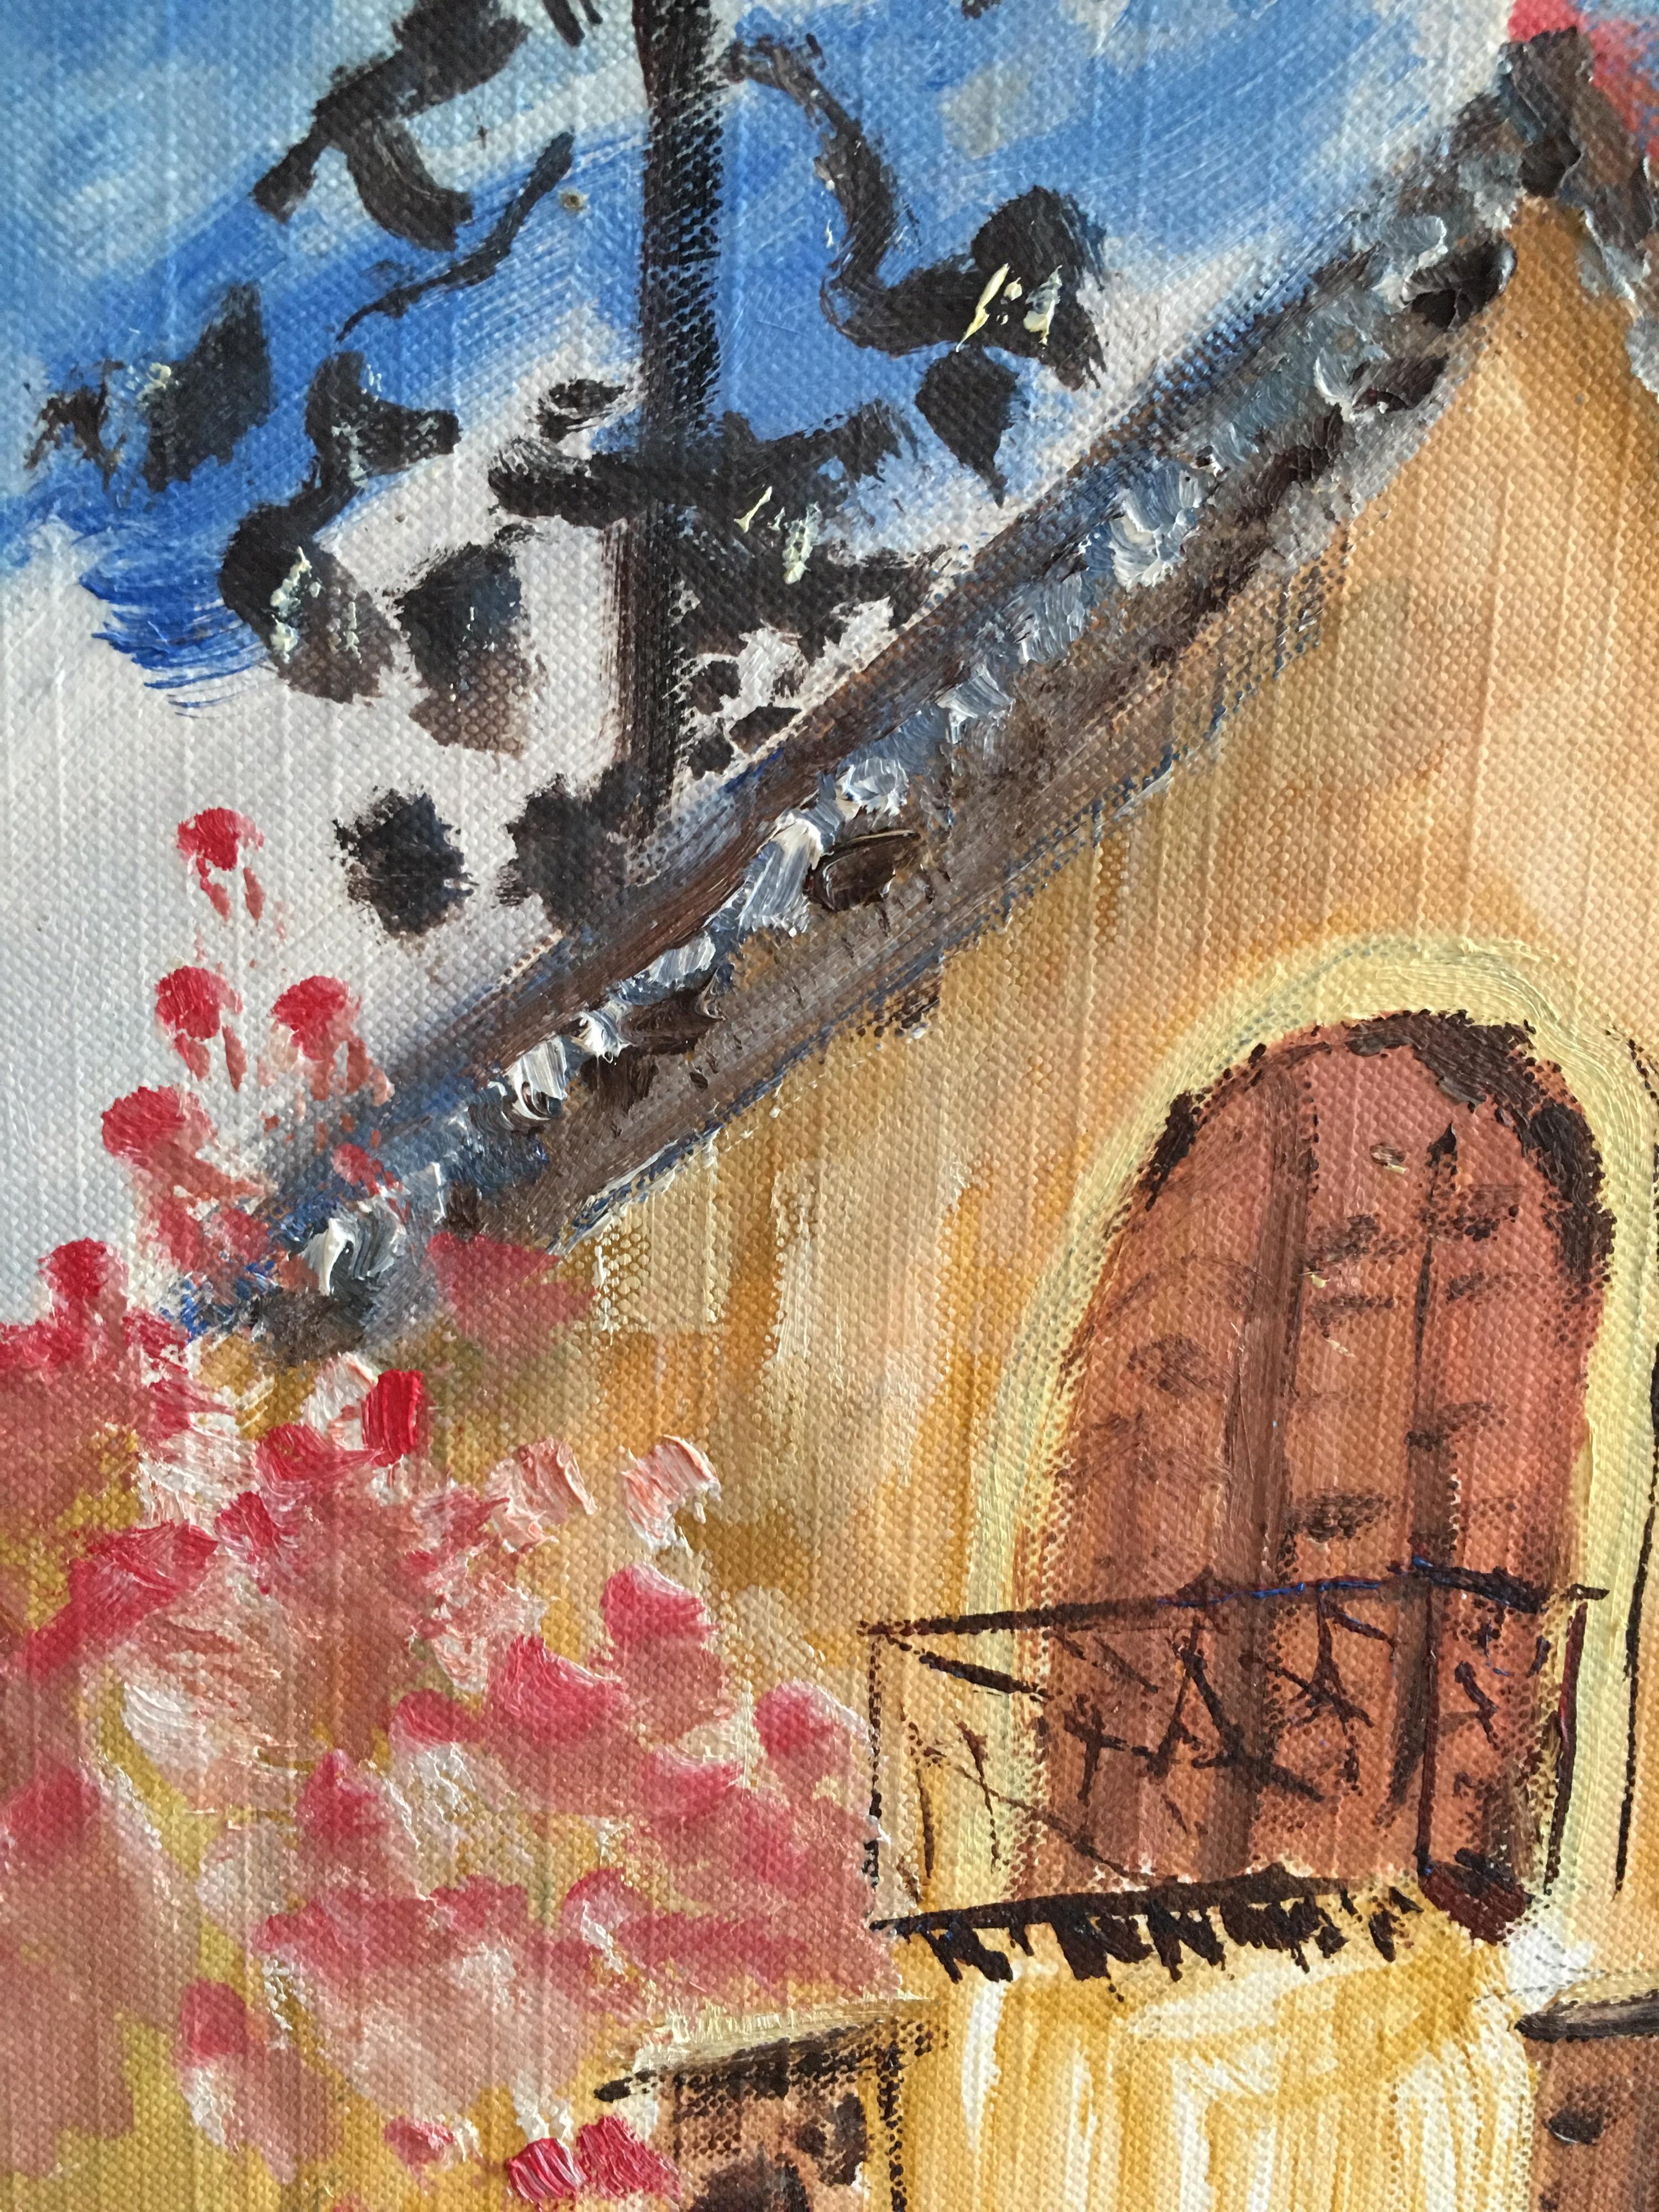 Joli balcon français, paysage floral, peinture à l'huile originale
École française, 20e siècle
Peinture à l'huile sur carton/papier fin, non encadrée
Taille de la carte : 16 x 13 pouces

Délicieuse peinture à l'huile impressionniste française,